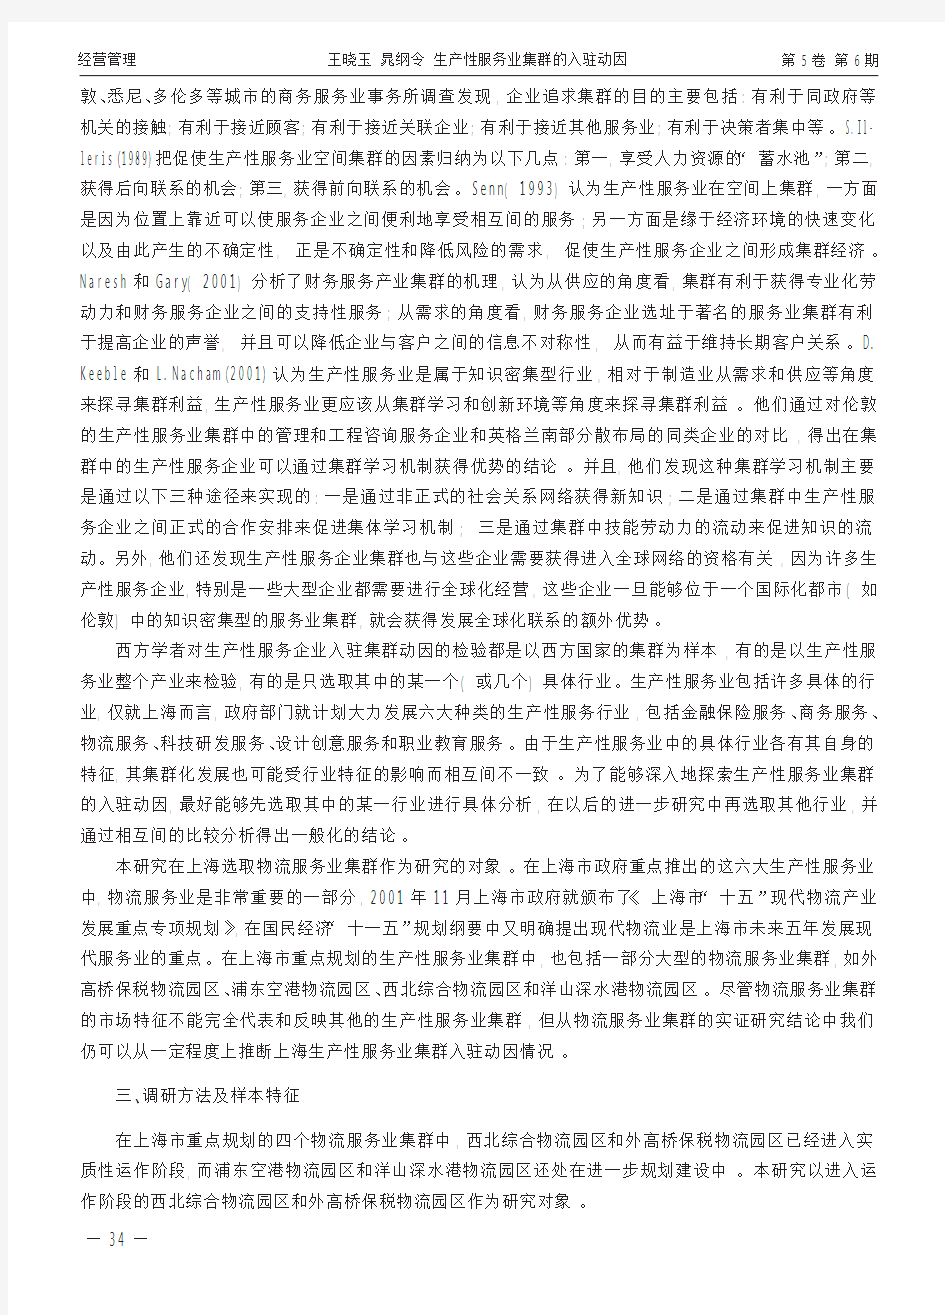 生产性服务业集群的入驻动因_基于上海物流服务业集群入驻企业的实证分析